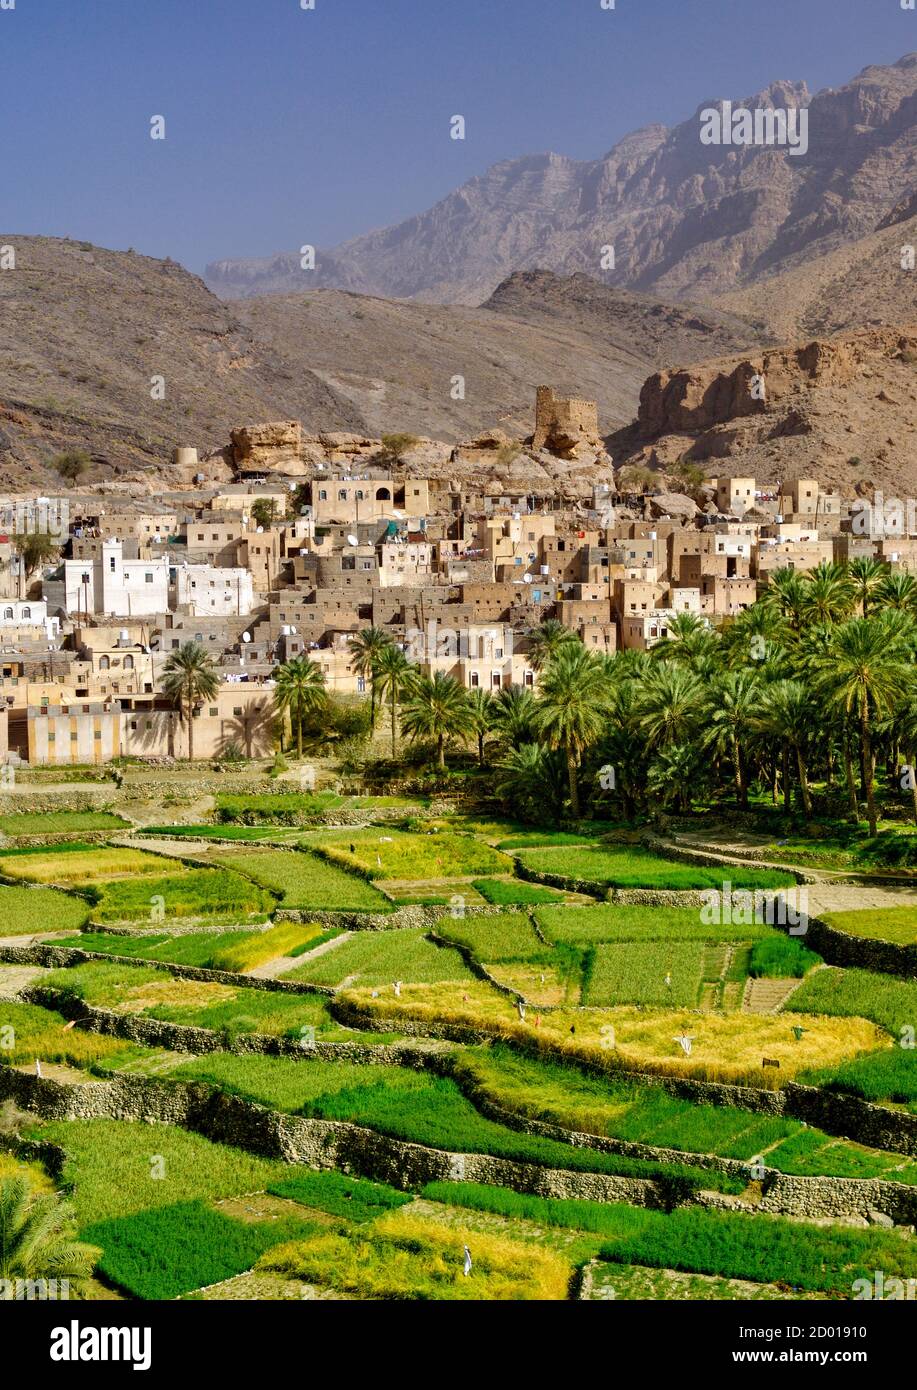 Das Dorf Bilad seT und seine Plantagen in Wadi Bani auf im Jebel Akhdar Gebirge von Oman. Stockfoto